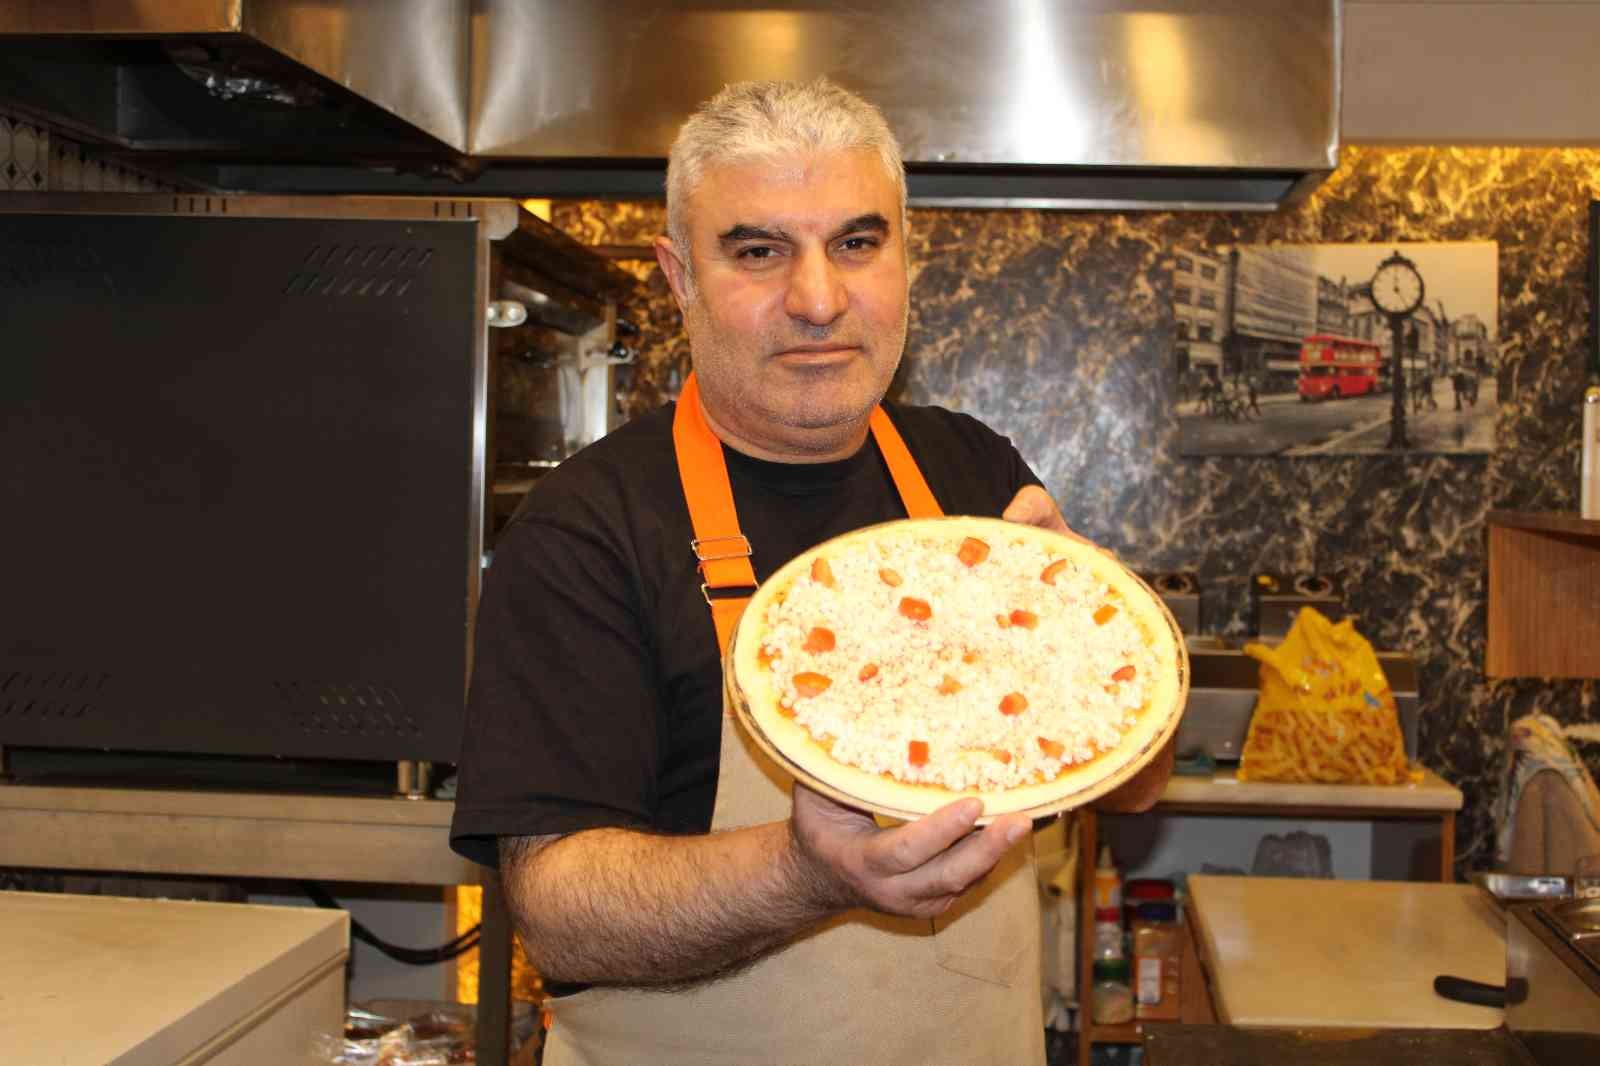 (ÖZEL) Cambridge sertifikalı pizzacı